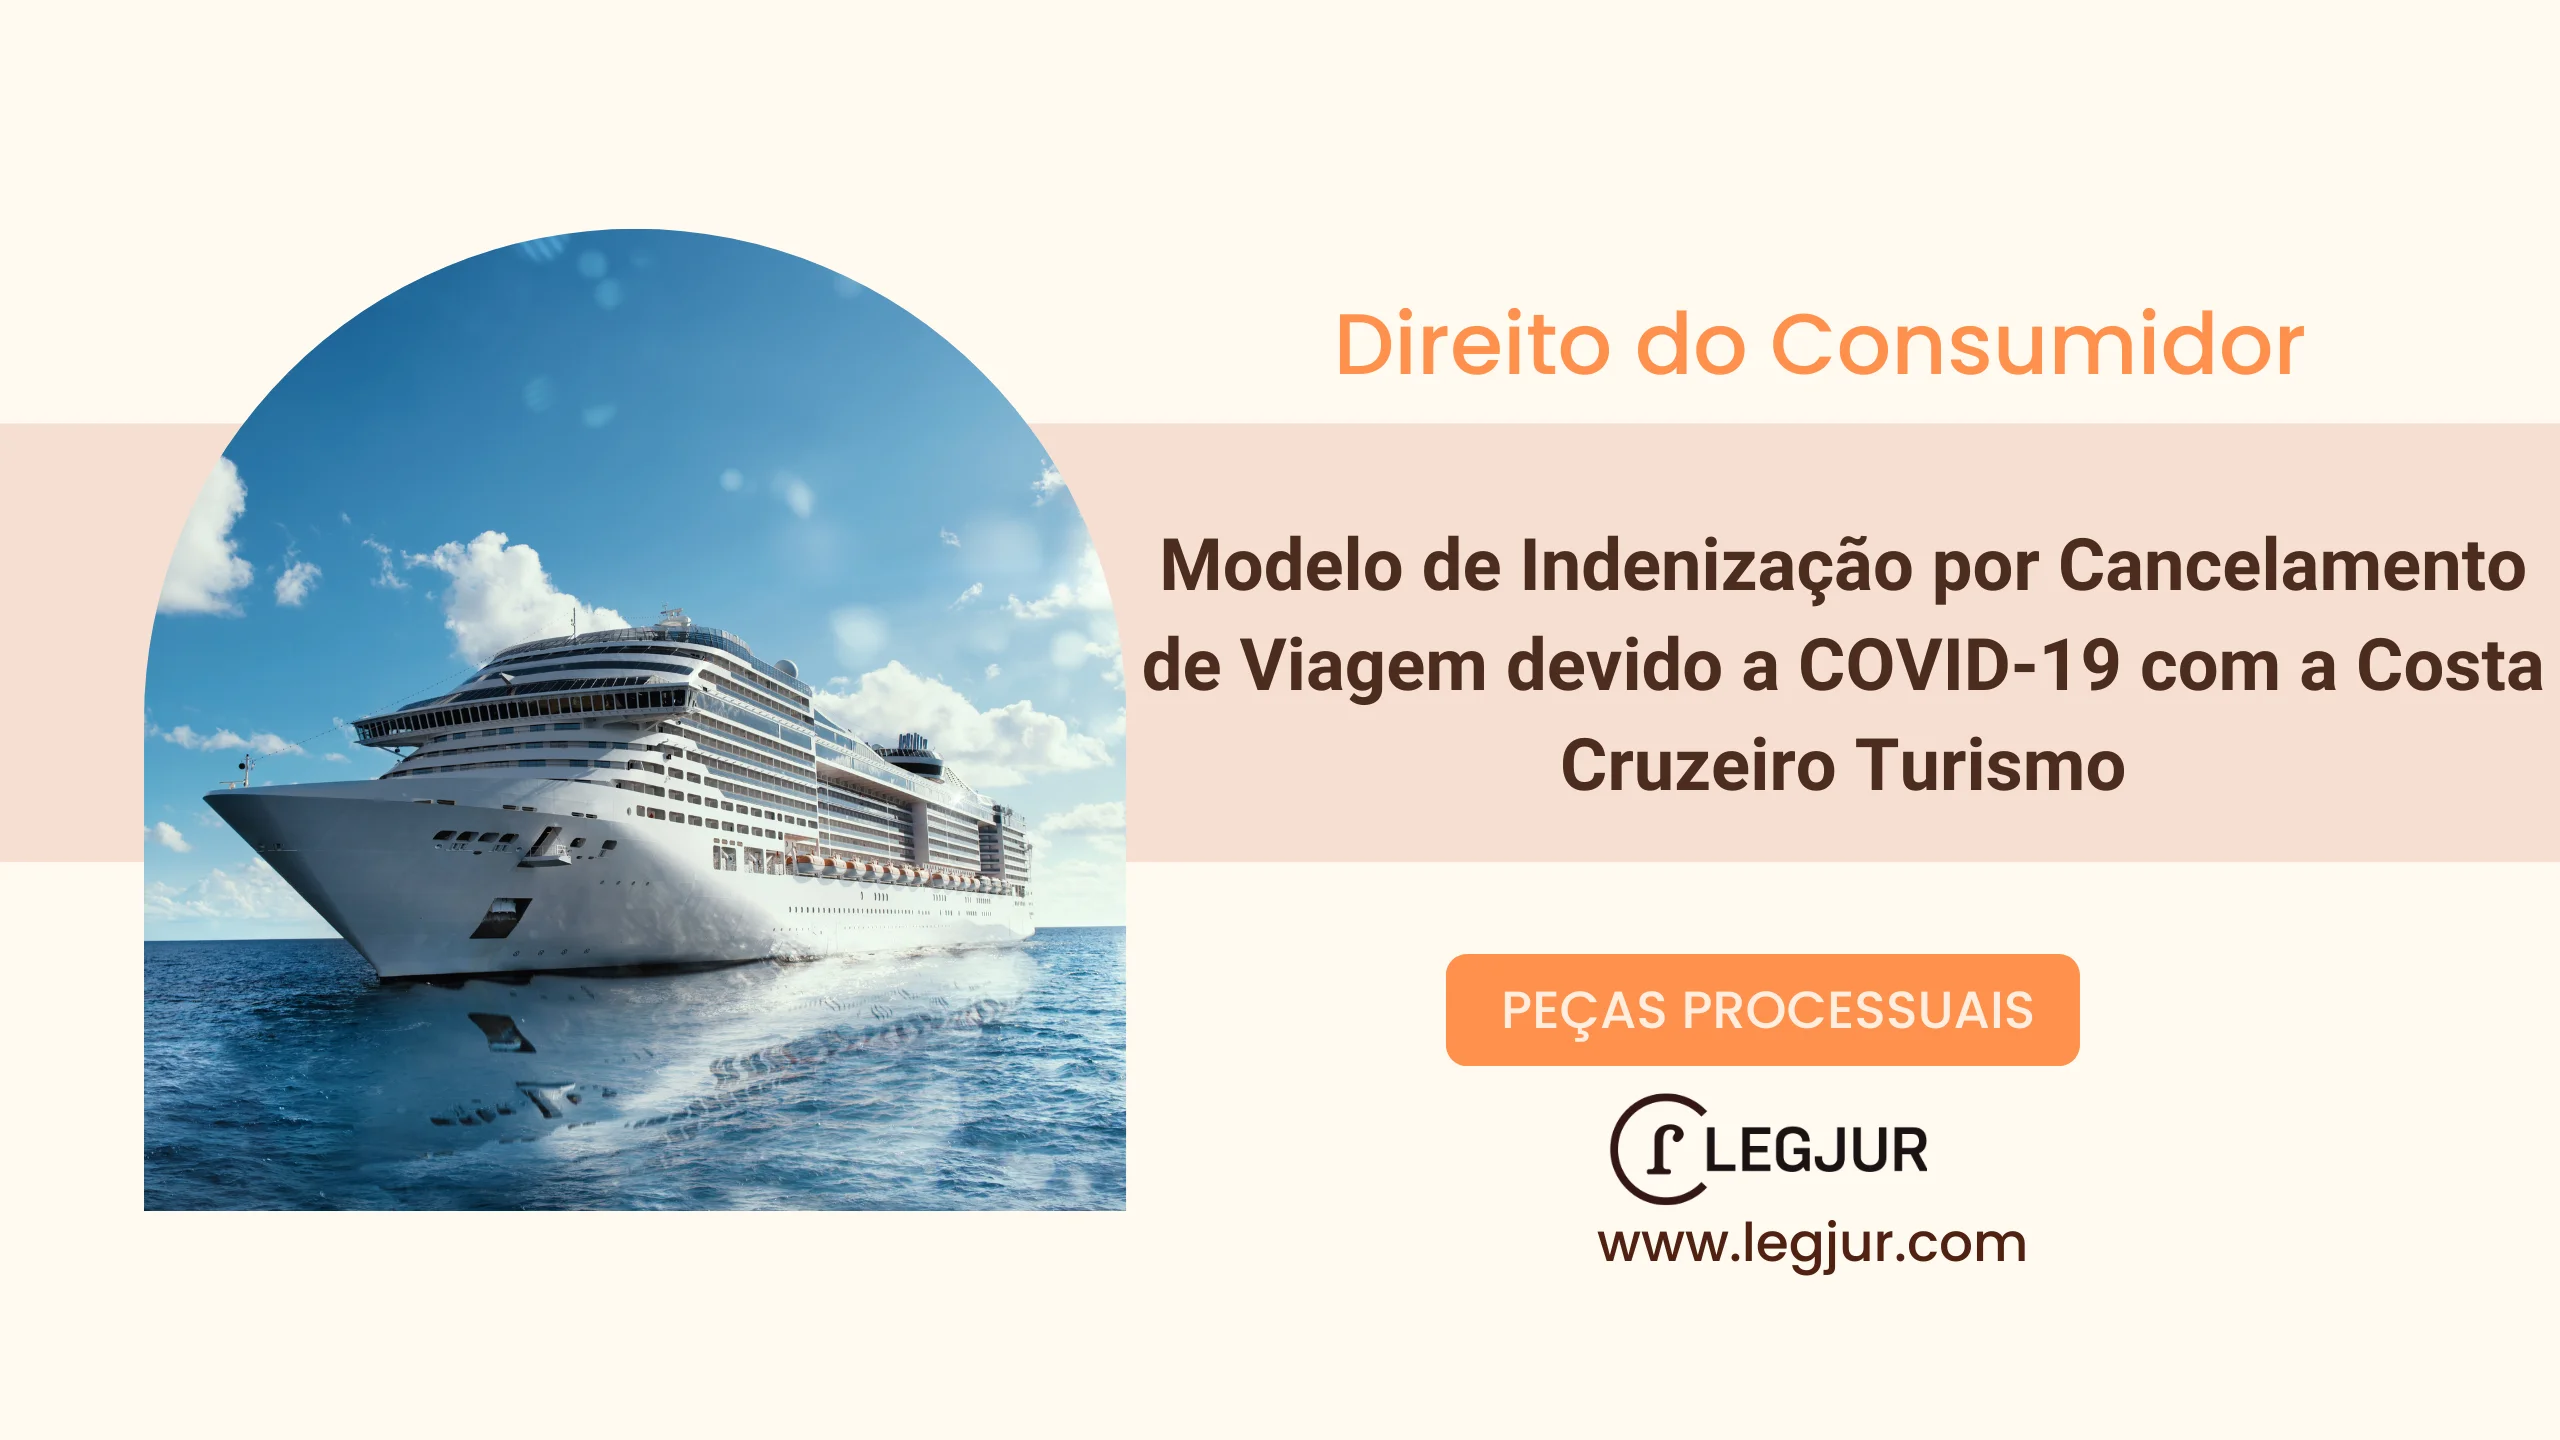 Modelo de Indenização por Cancelamento de Viagem devido a COVID-19 com a Costa Cruzeiro Turismo